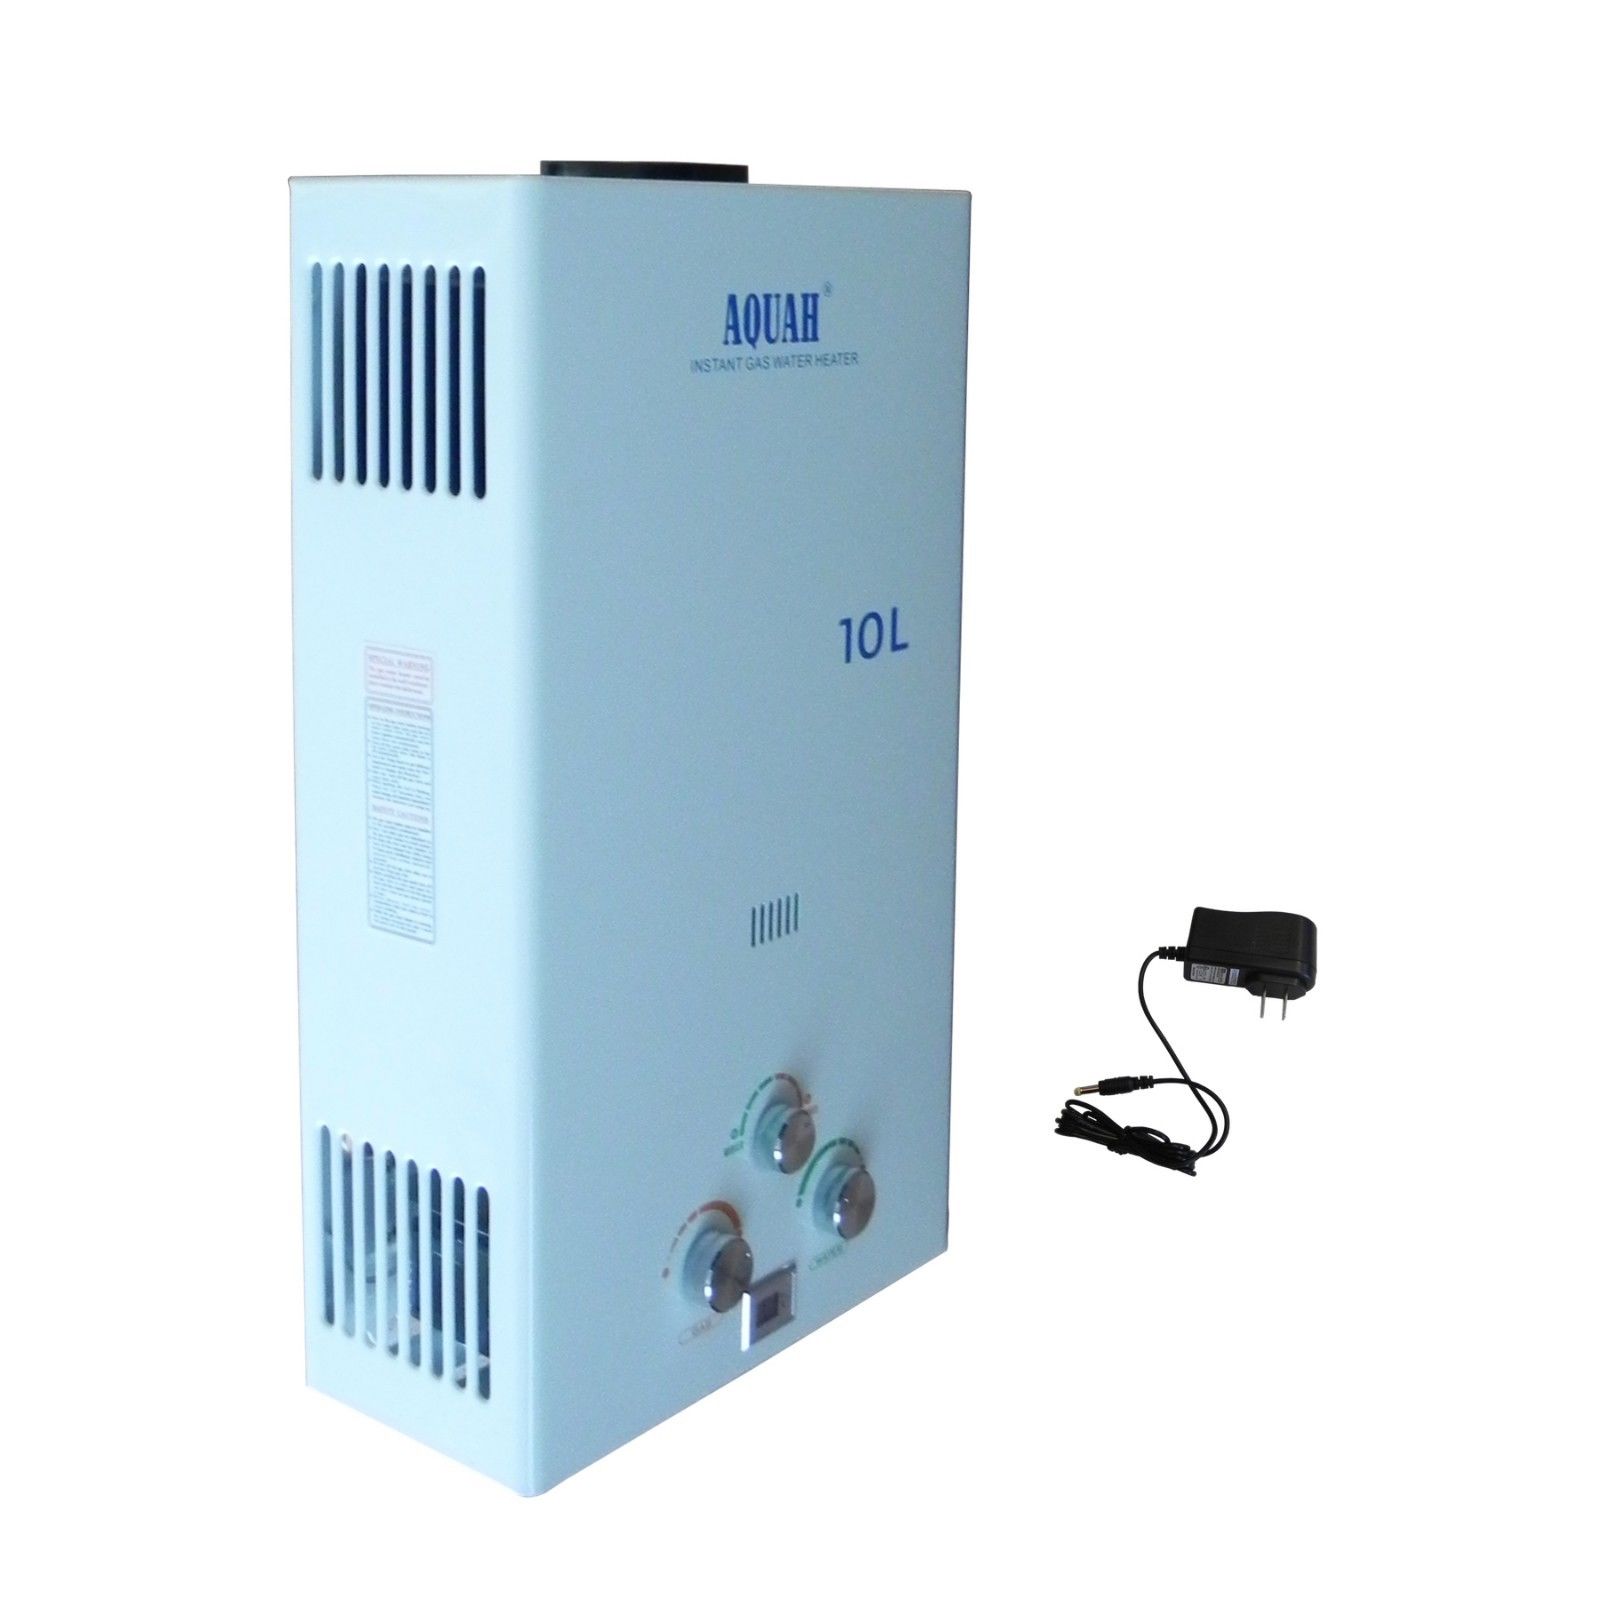 AQUAH 10L (2.65 GPM) Liquid Propane Gas Tankless Water Heater